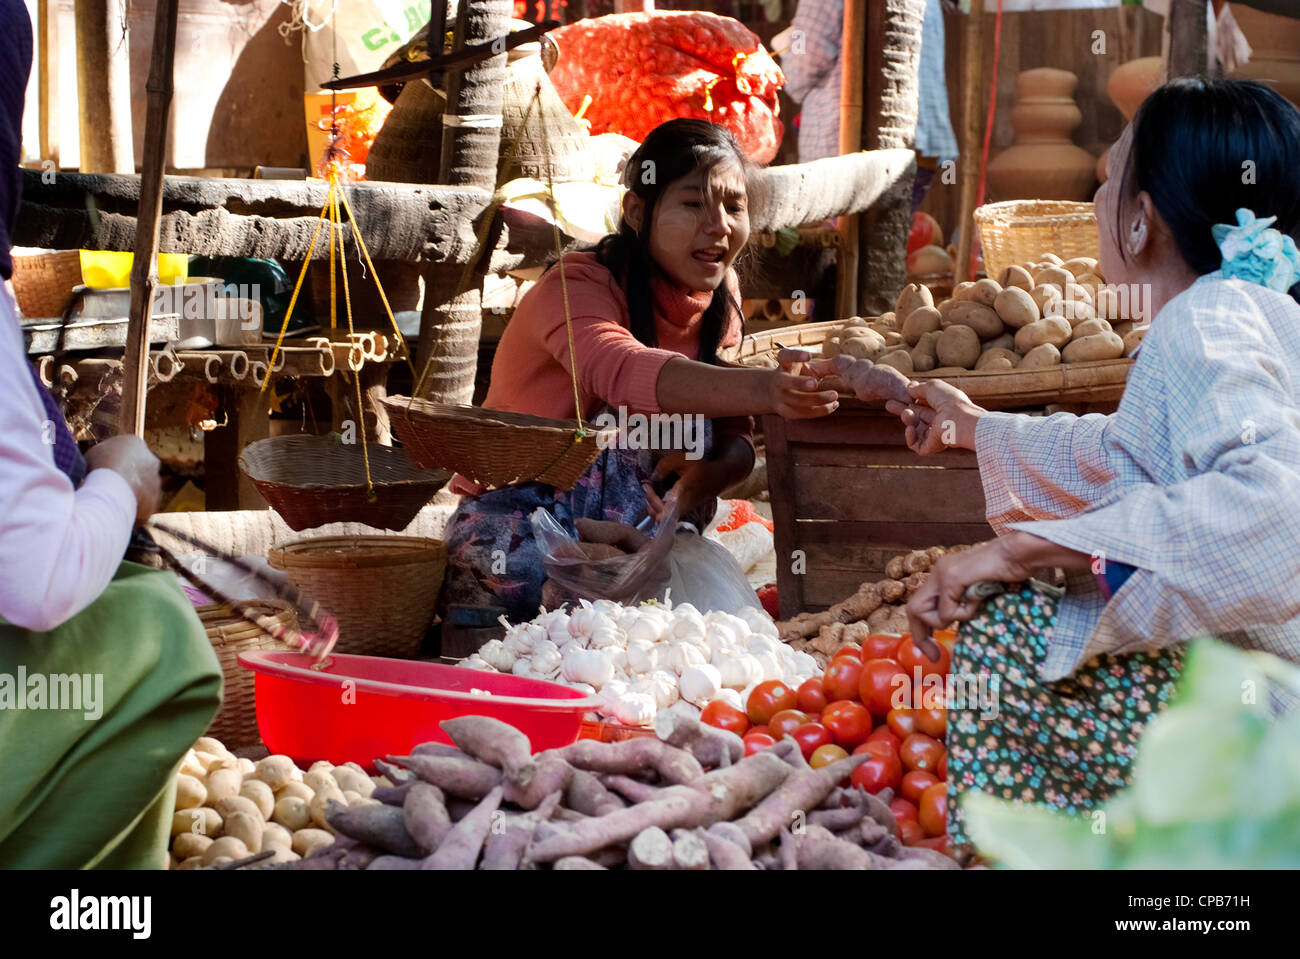 Nicht identifizierte Personen sind am Gemüse Stand auf dem Markt von Nyaung-U, Myanmar. Nyaung-U ist das Tor zur Stadt Bagan Stockfoto